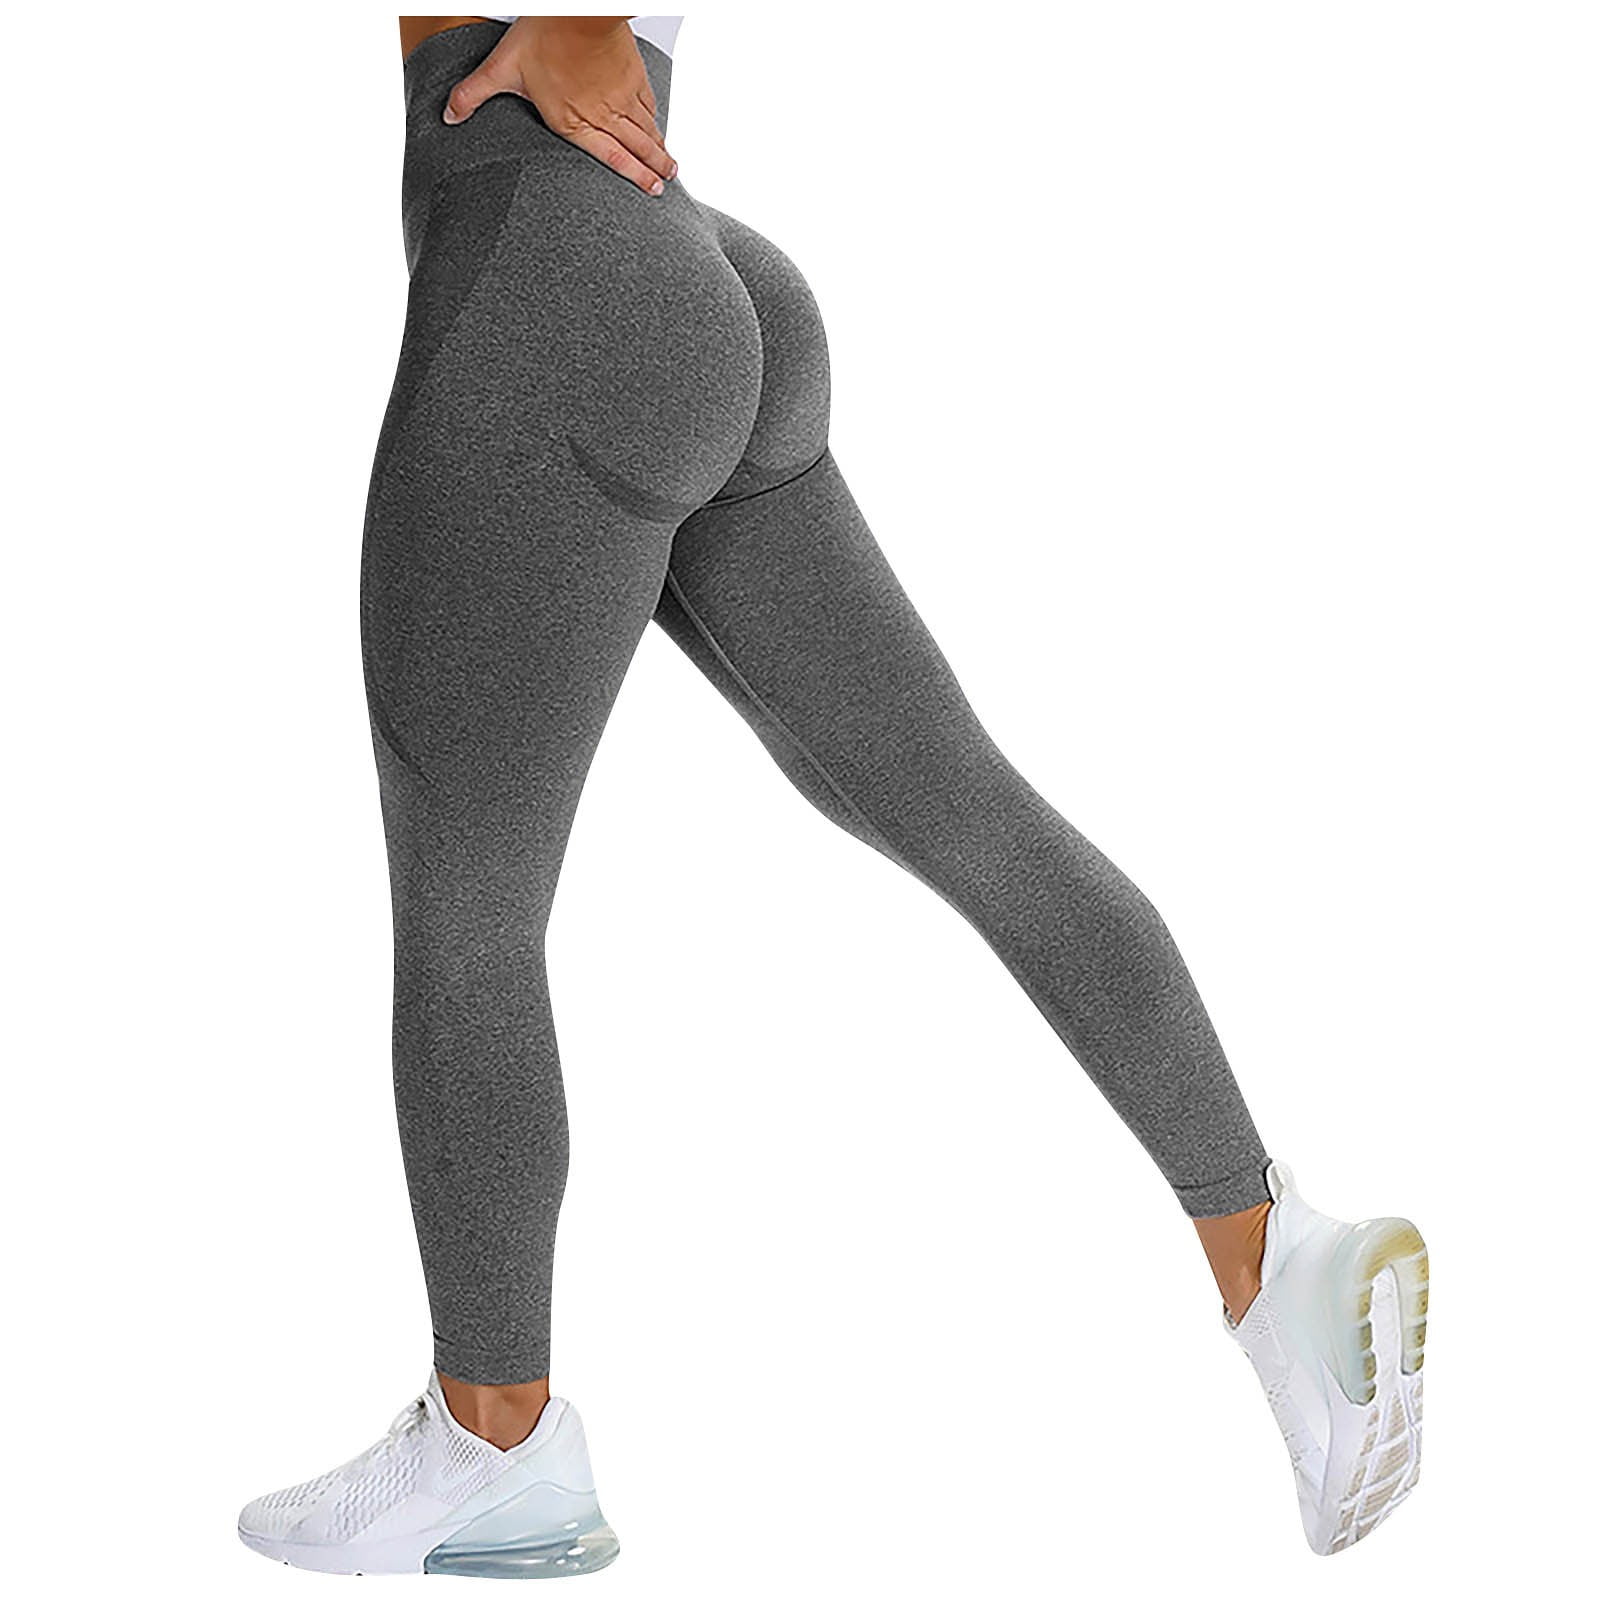 Mesh Yoga Pants for Women Seamless Yoga Pants Seamless